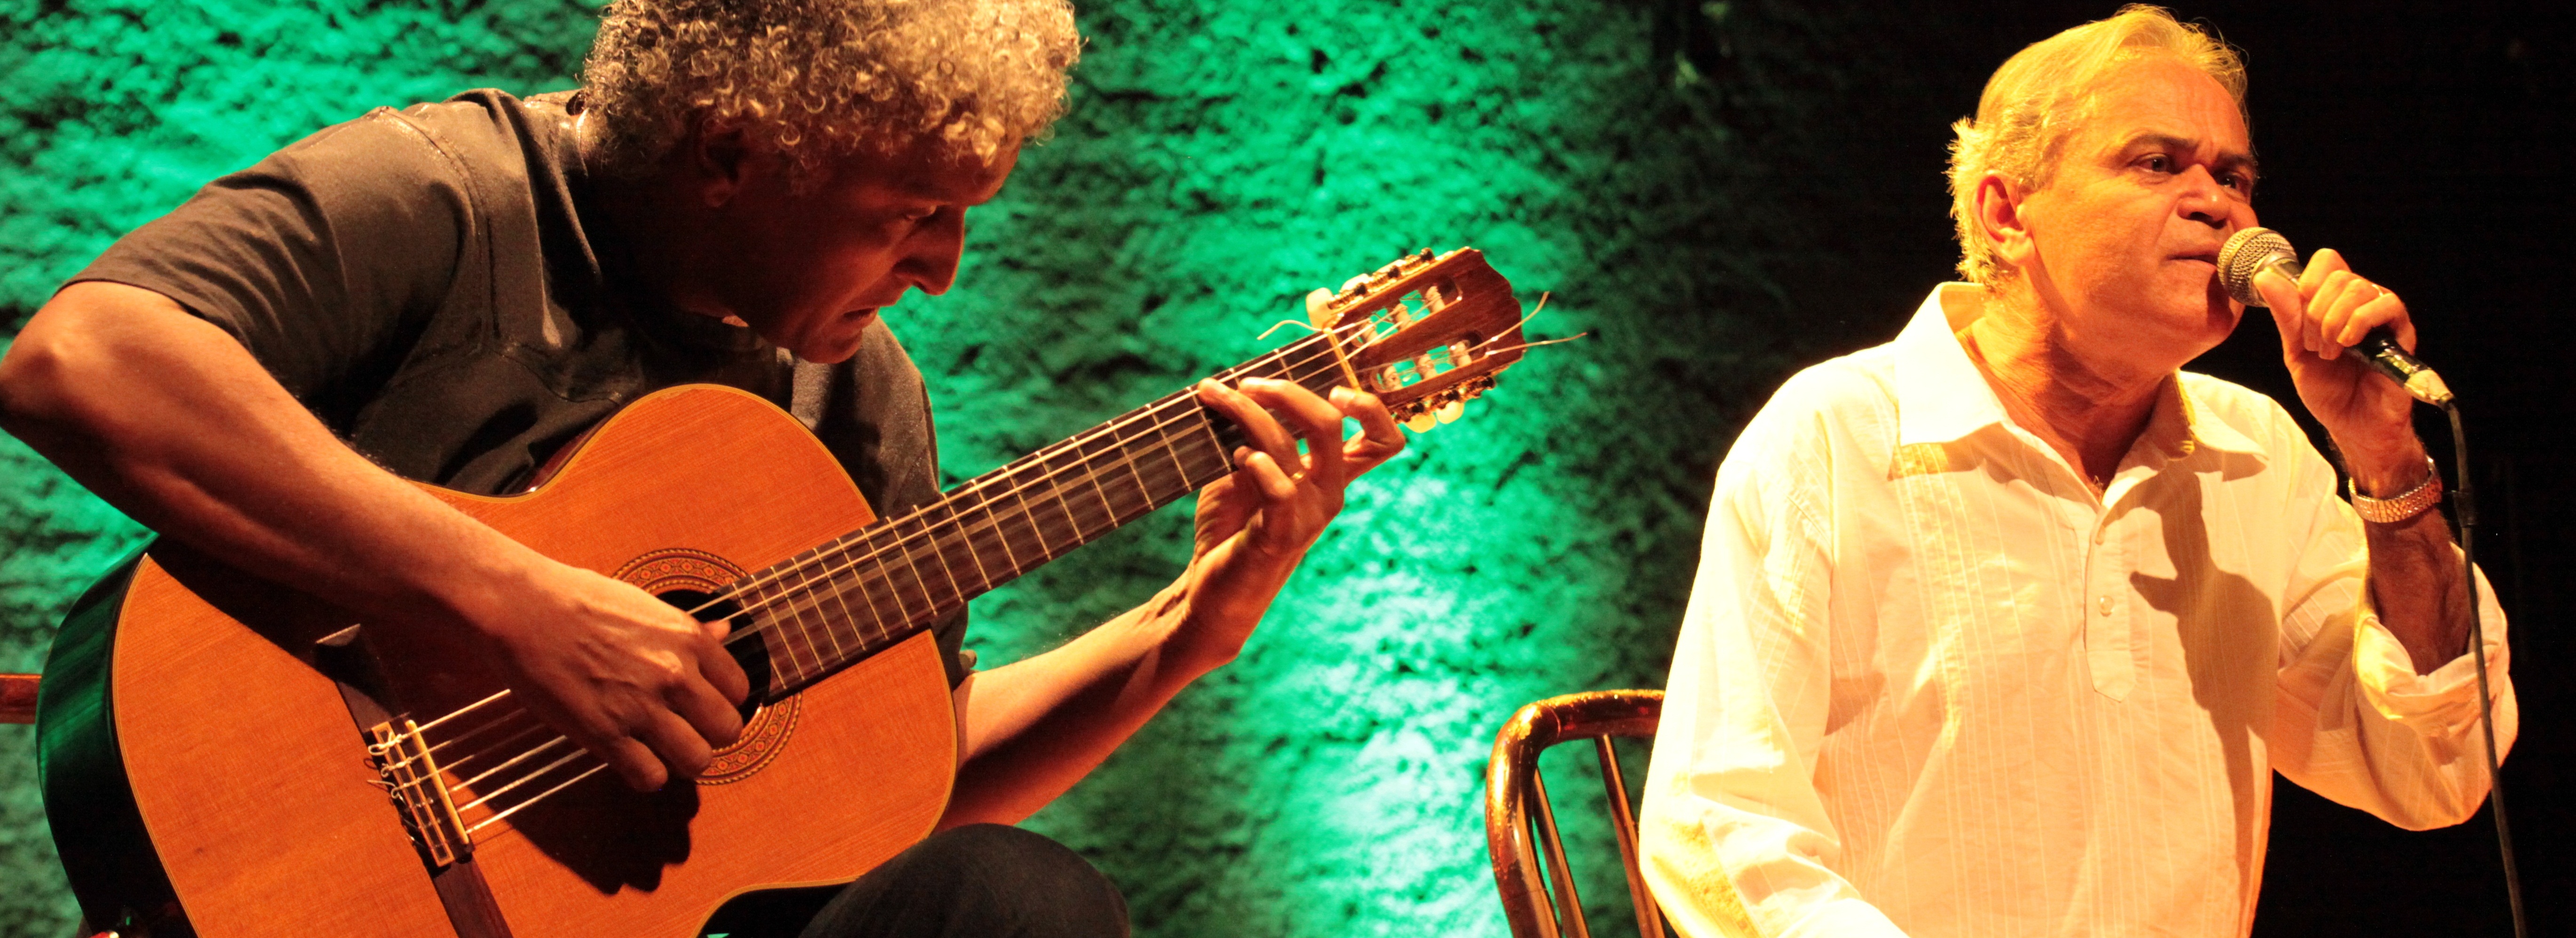 Músicos Felipe Valoz e Chico Aafa se apresentam no Teatro do IFG - Câmpus Goiânia (crédito/foto: Marcos Nalim).